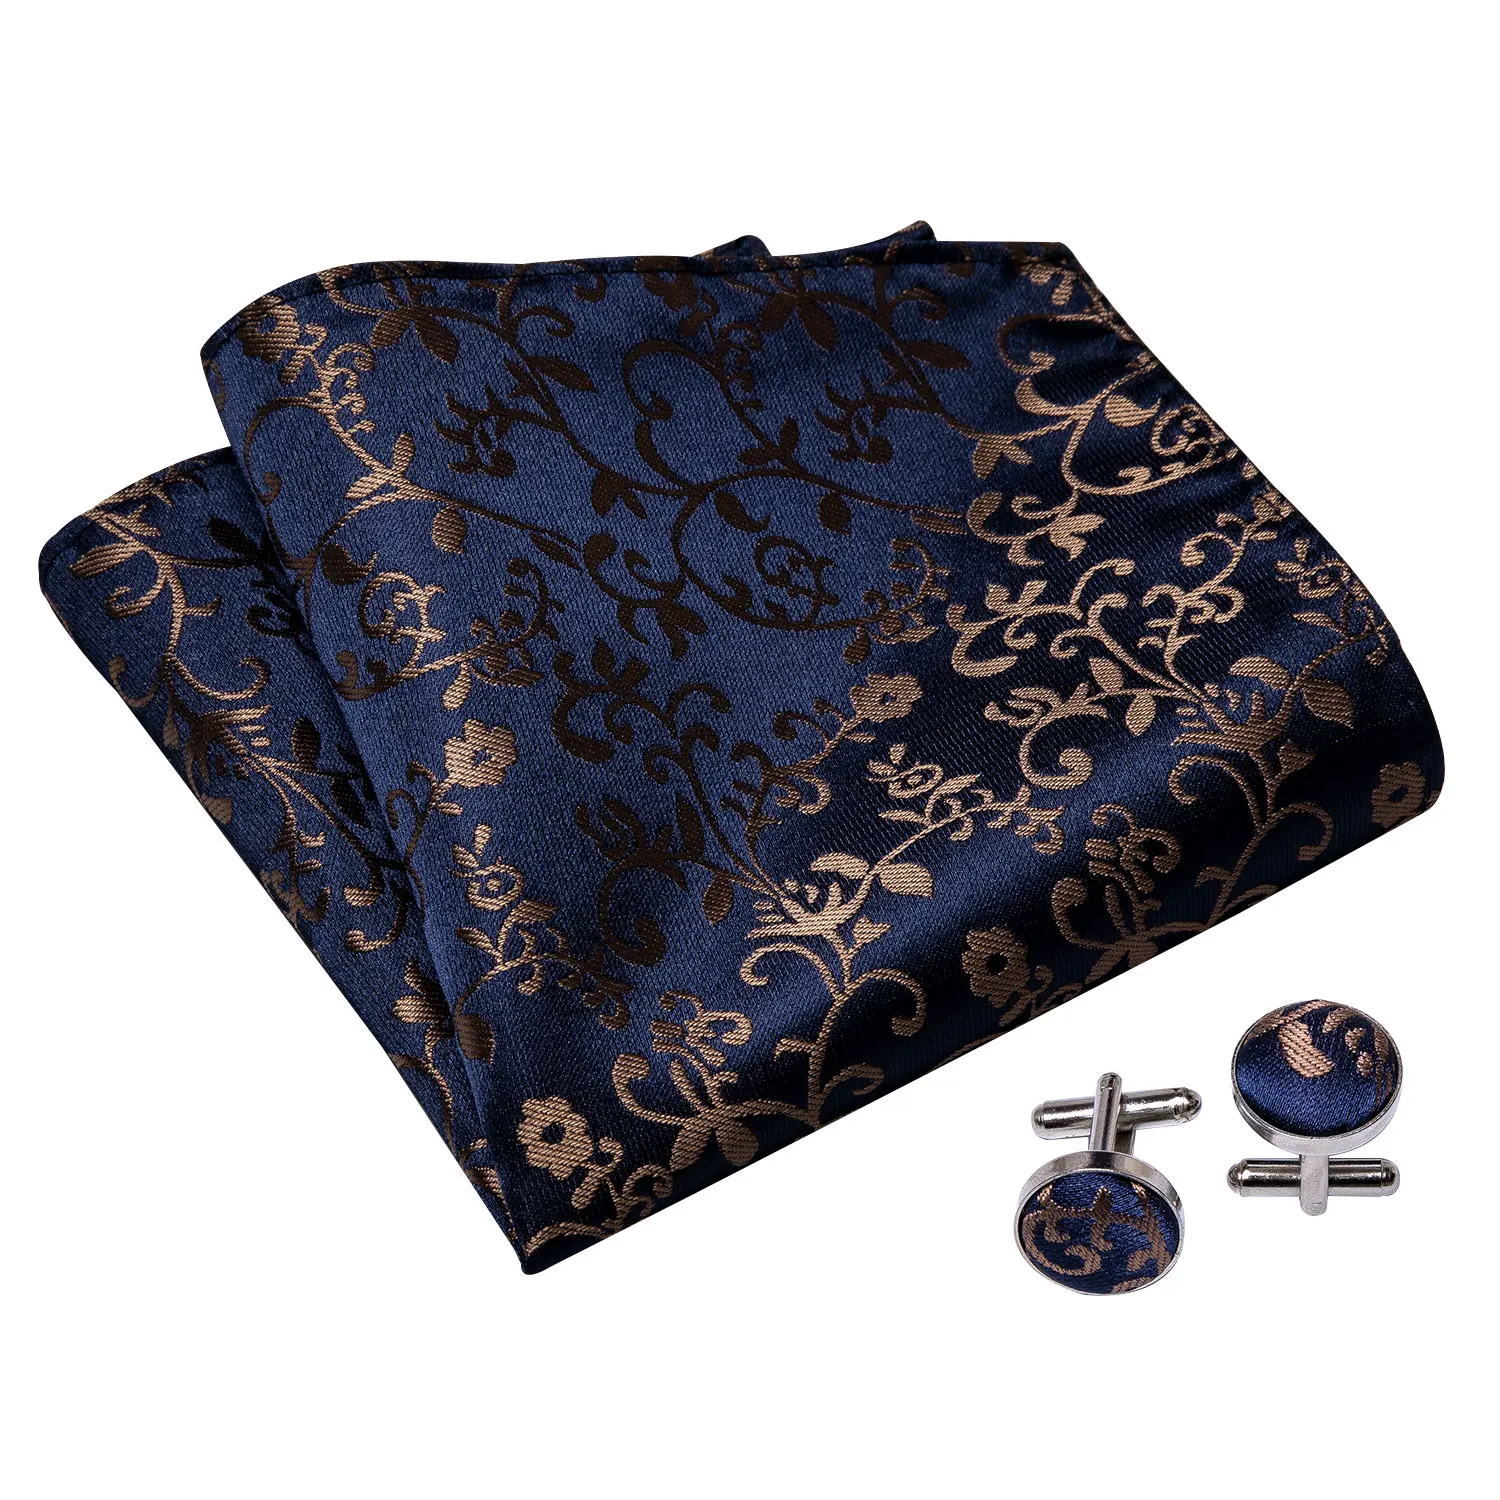 Мужской комплект Ascot синий галстук золотой цветочный Шелковый галстук модный дизайнерский галстук платок Карманный квадратный набор для мужчин Барри. Ван